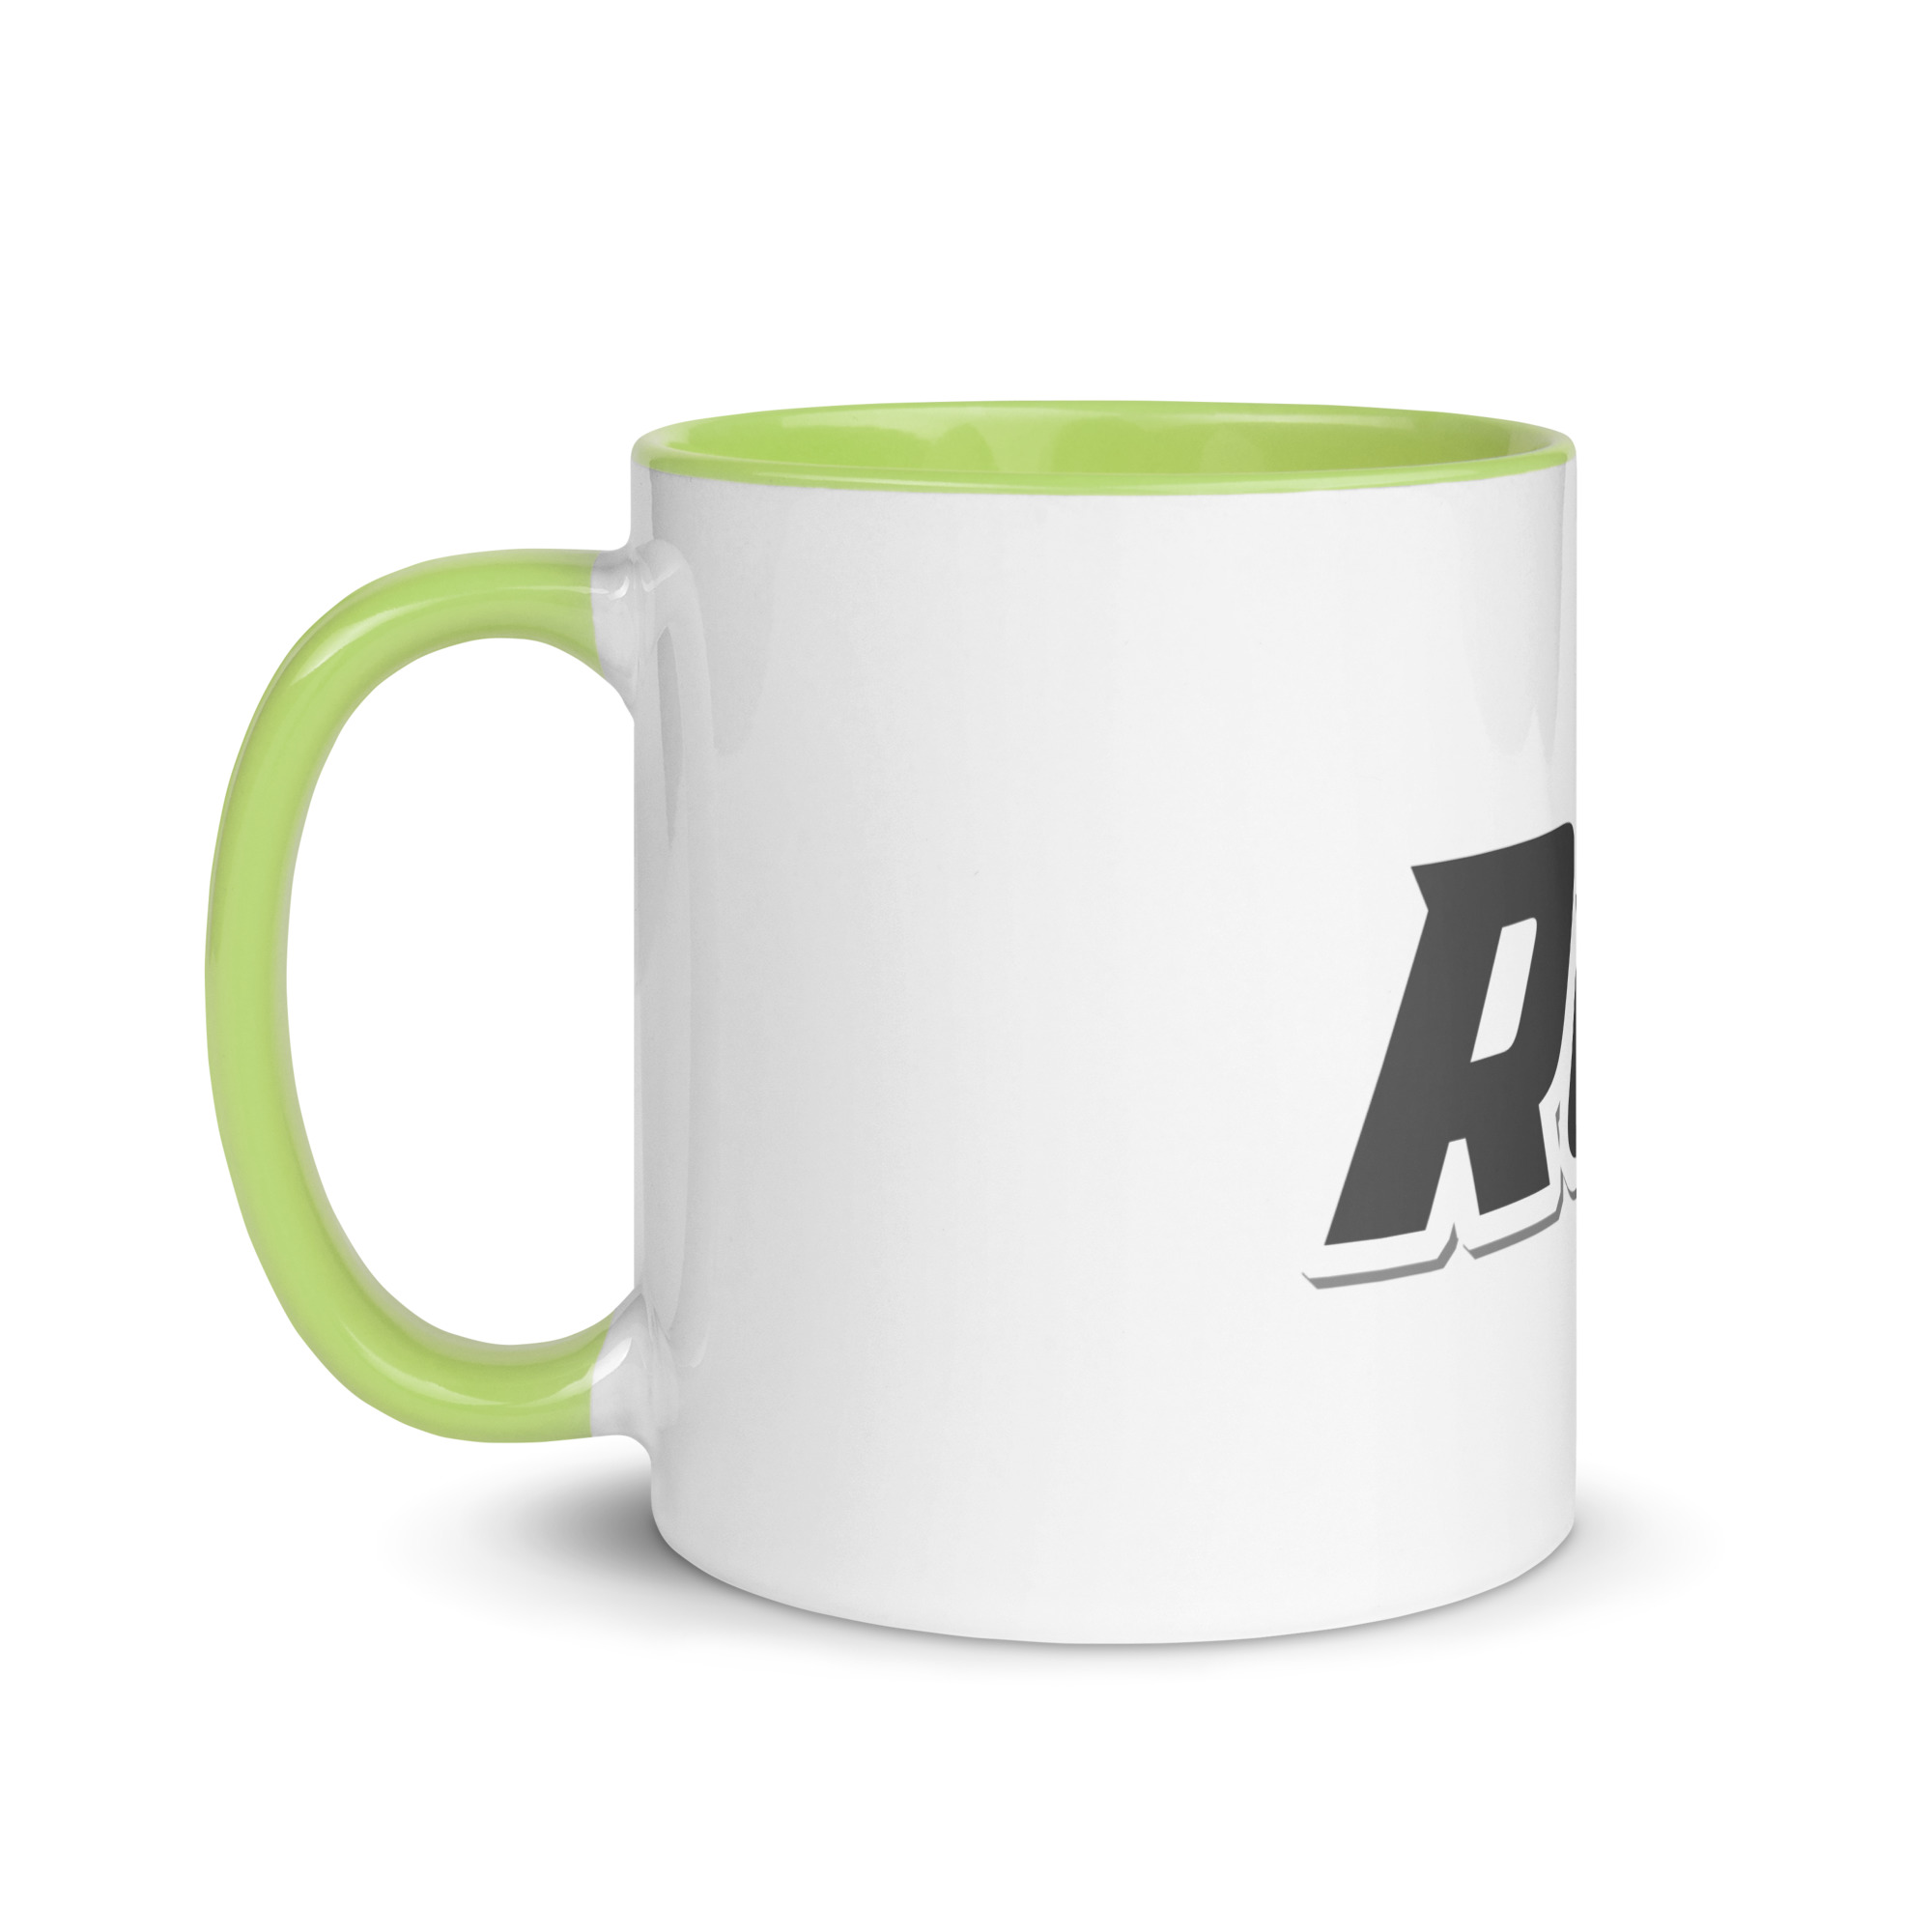 white-ceramic-mug-with-color-inside-green-11-oz-left-6525b6484cbcb.jpg